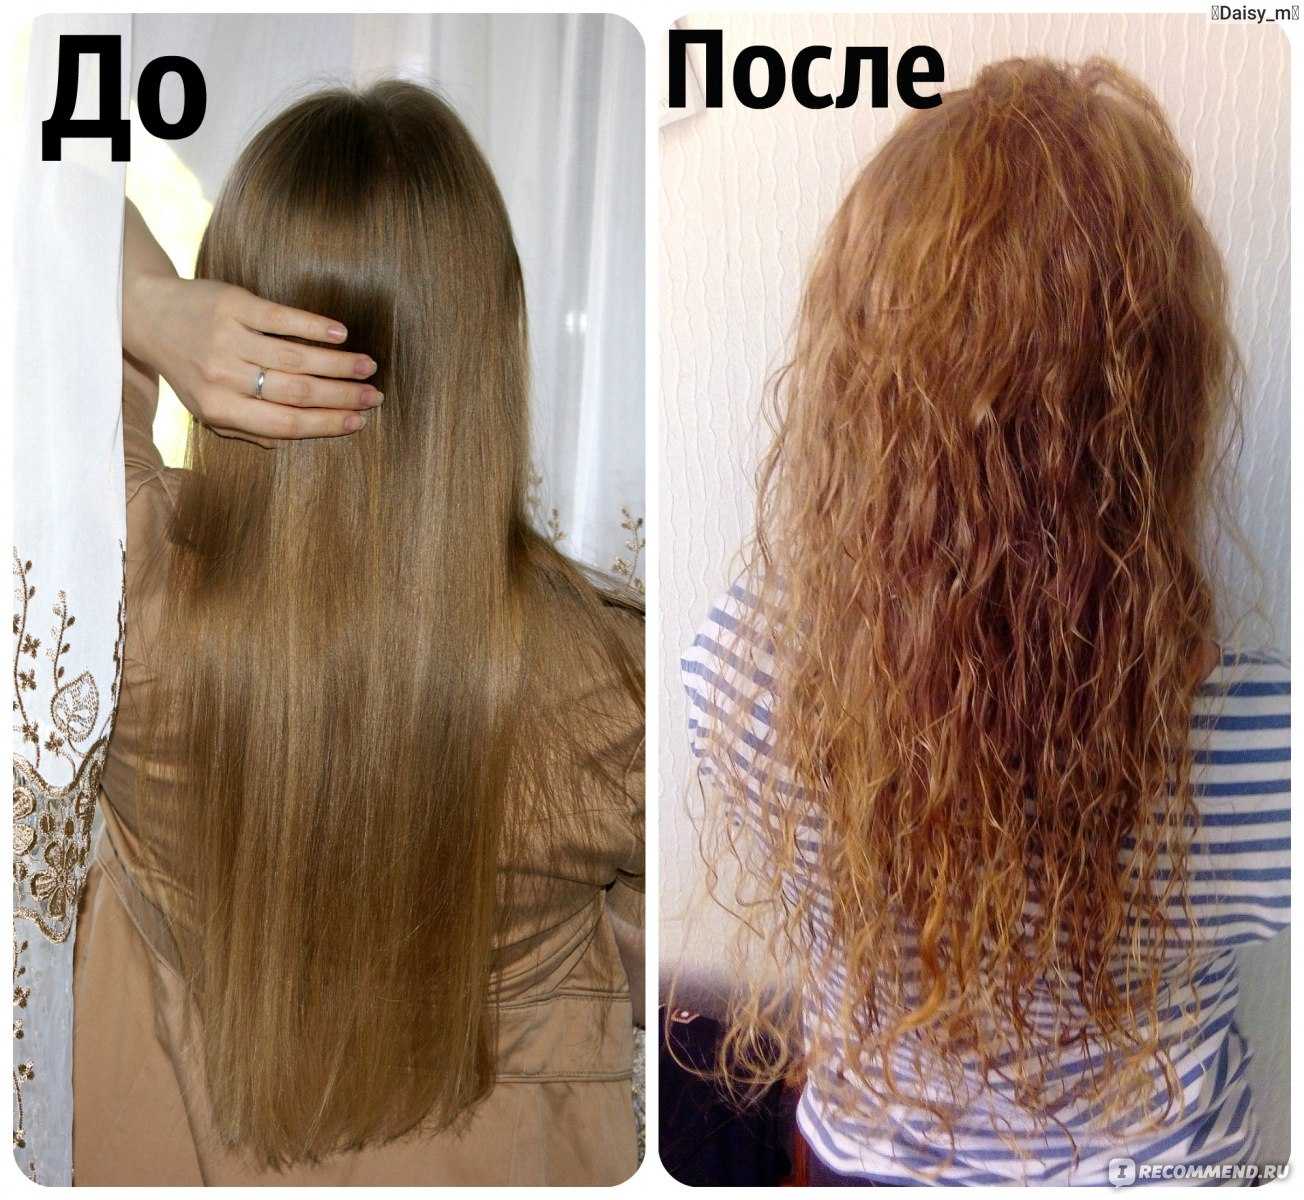 После химии как восстановить. Волосы после биозавивки. Биозавивка волос результат. Биохимия волос до и после. Биозавивка волос до и после.